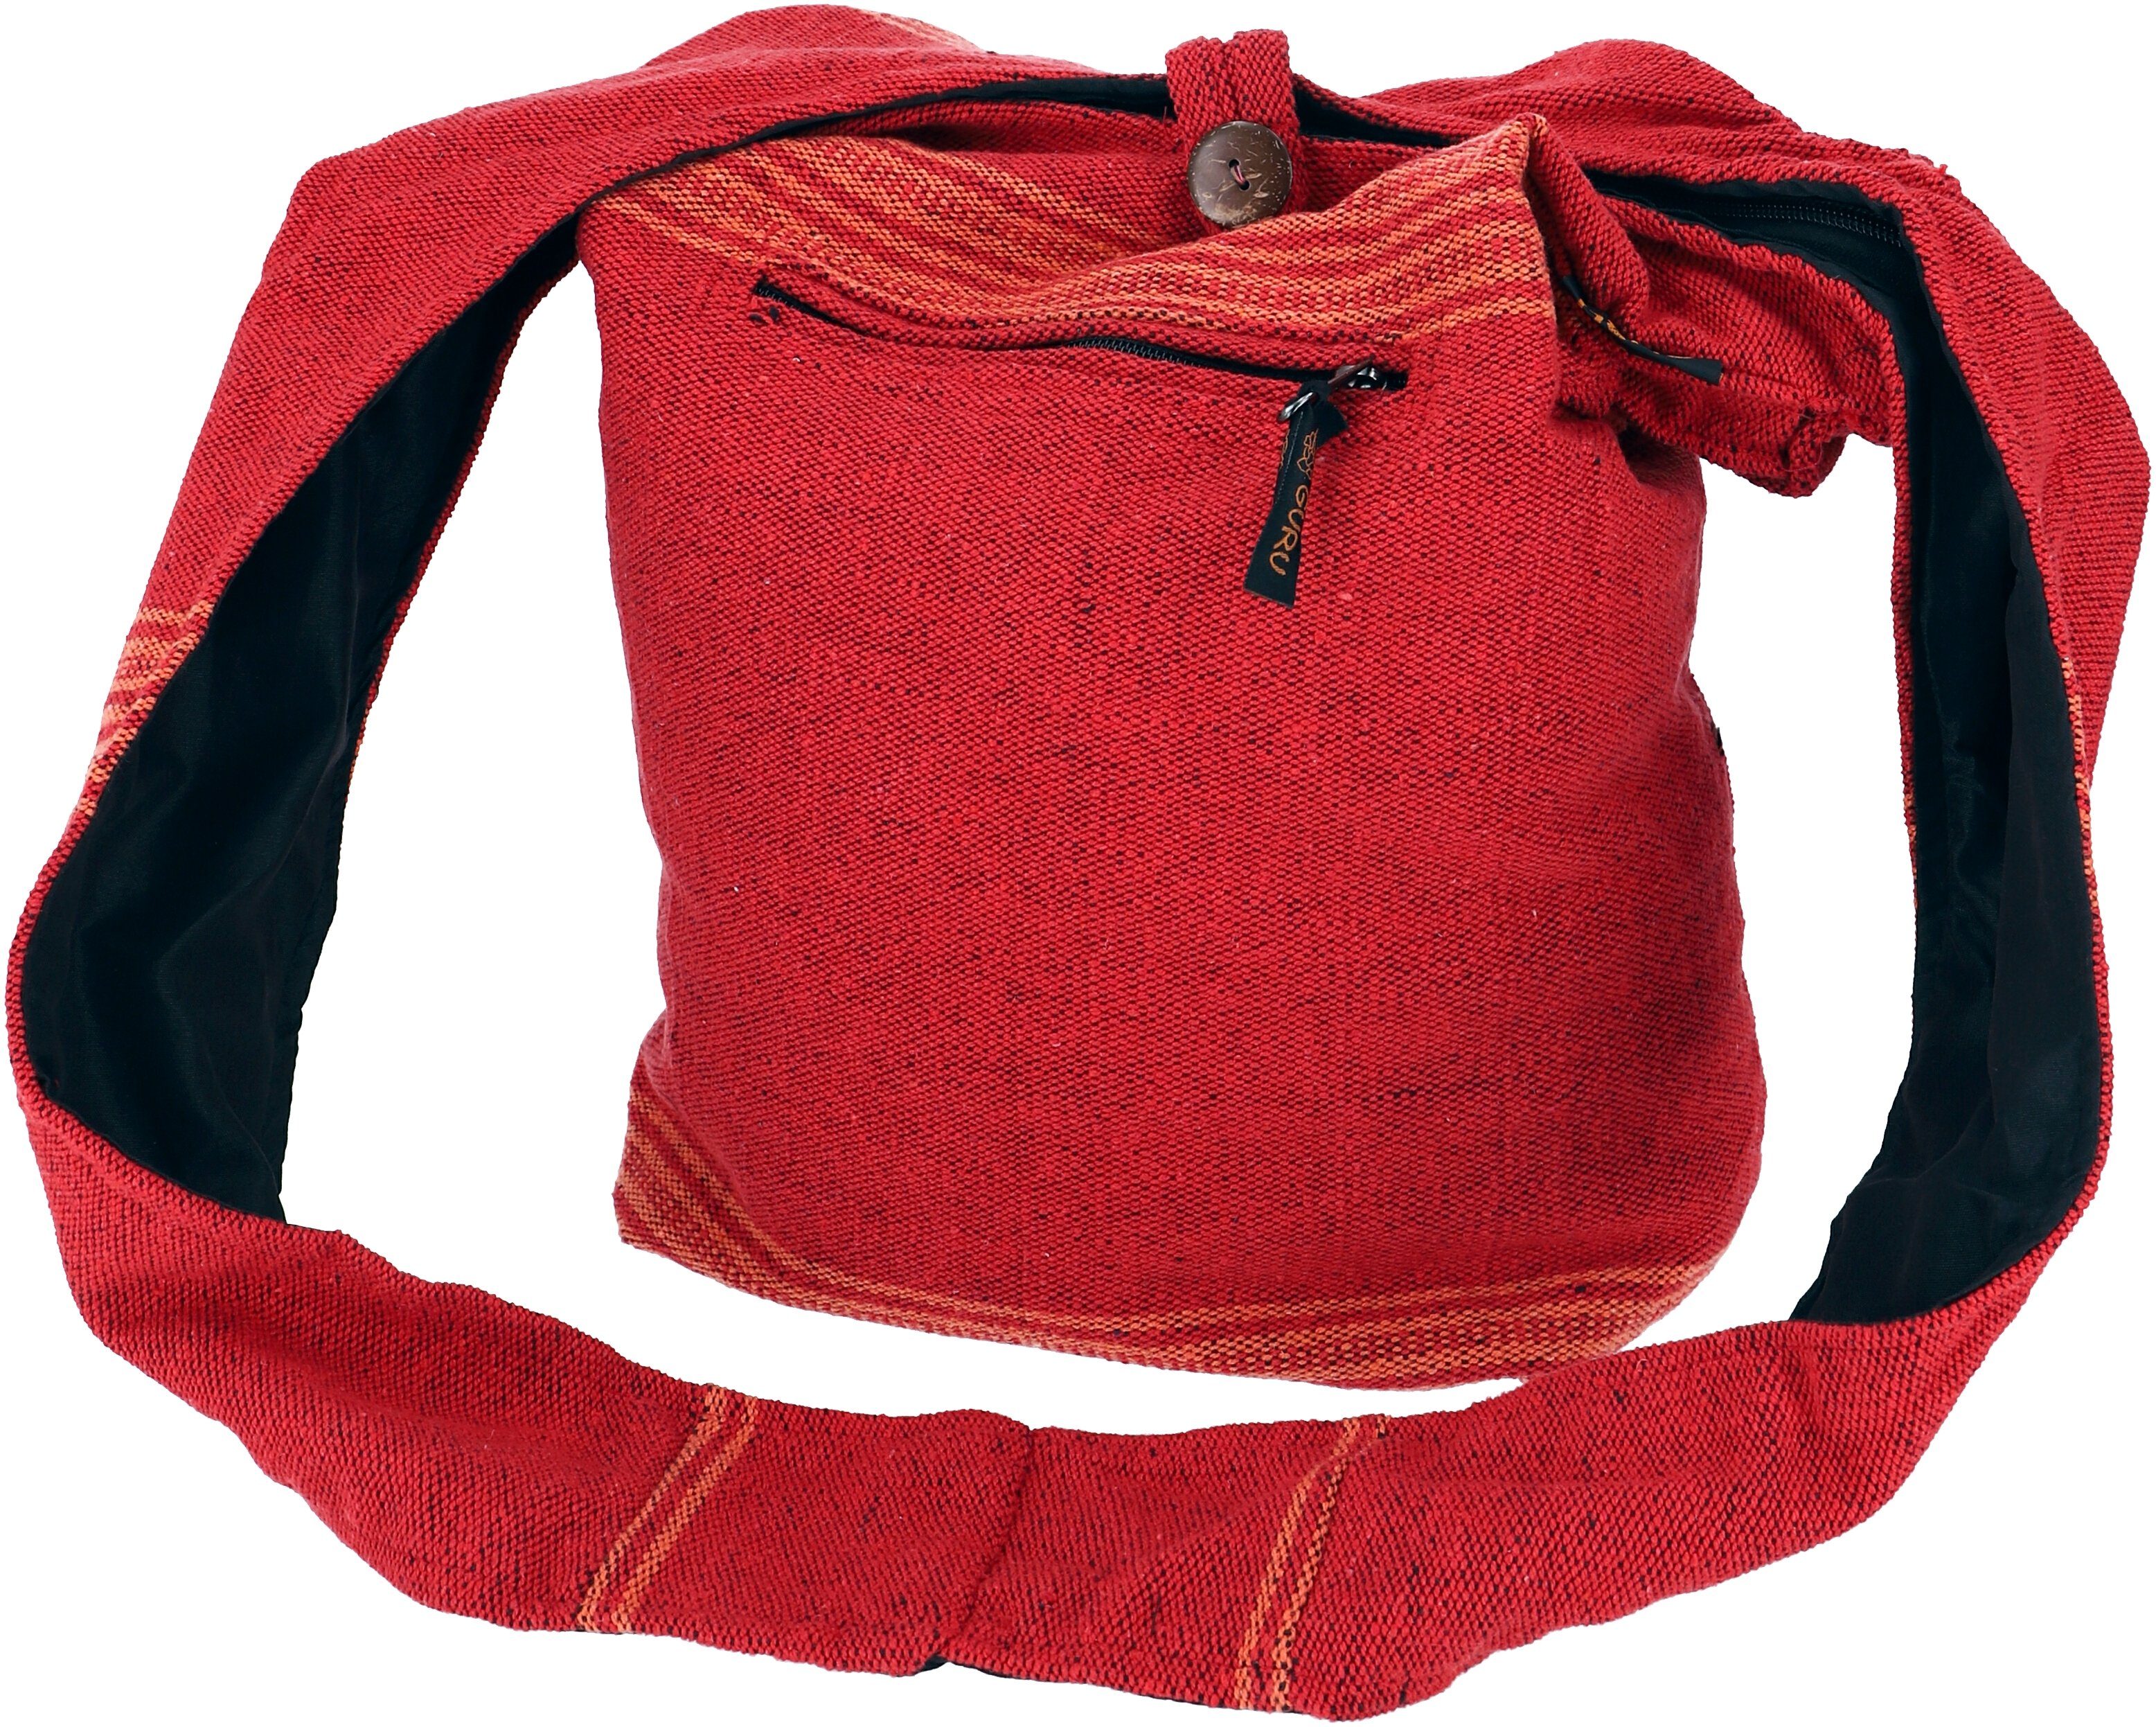 Guru-Shop Schultertasche Ethno Schulterbeutel, Nepal Tasche - Modell 9